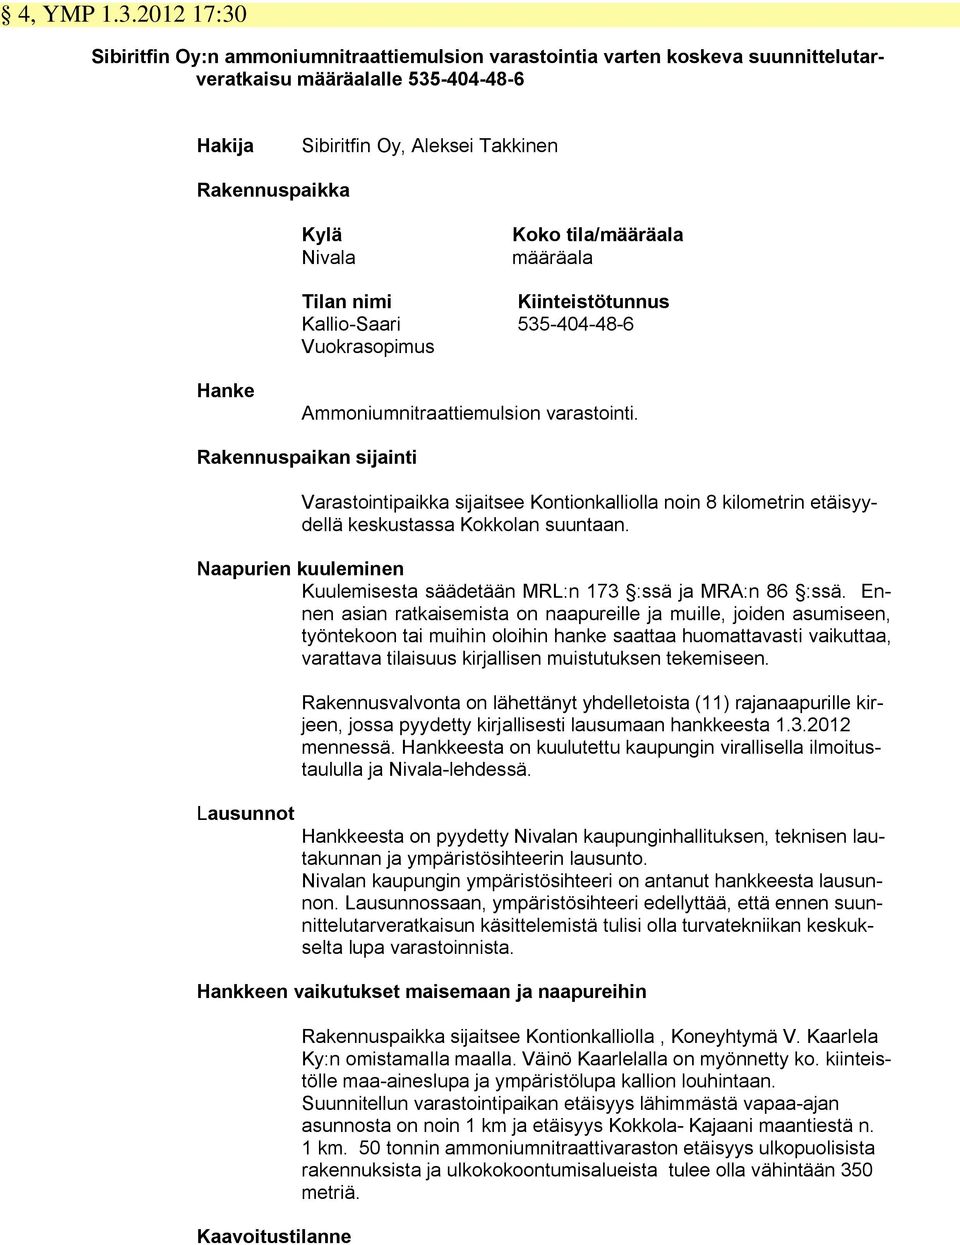 Koko tila/määräala määräala Tilan nimi Kiinteistötunnus Kallio-Saari 535-404-48-6 Vuokrasopimus Hanke Ammoniumnitraattiemulsion varastointi.